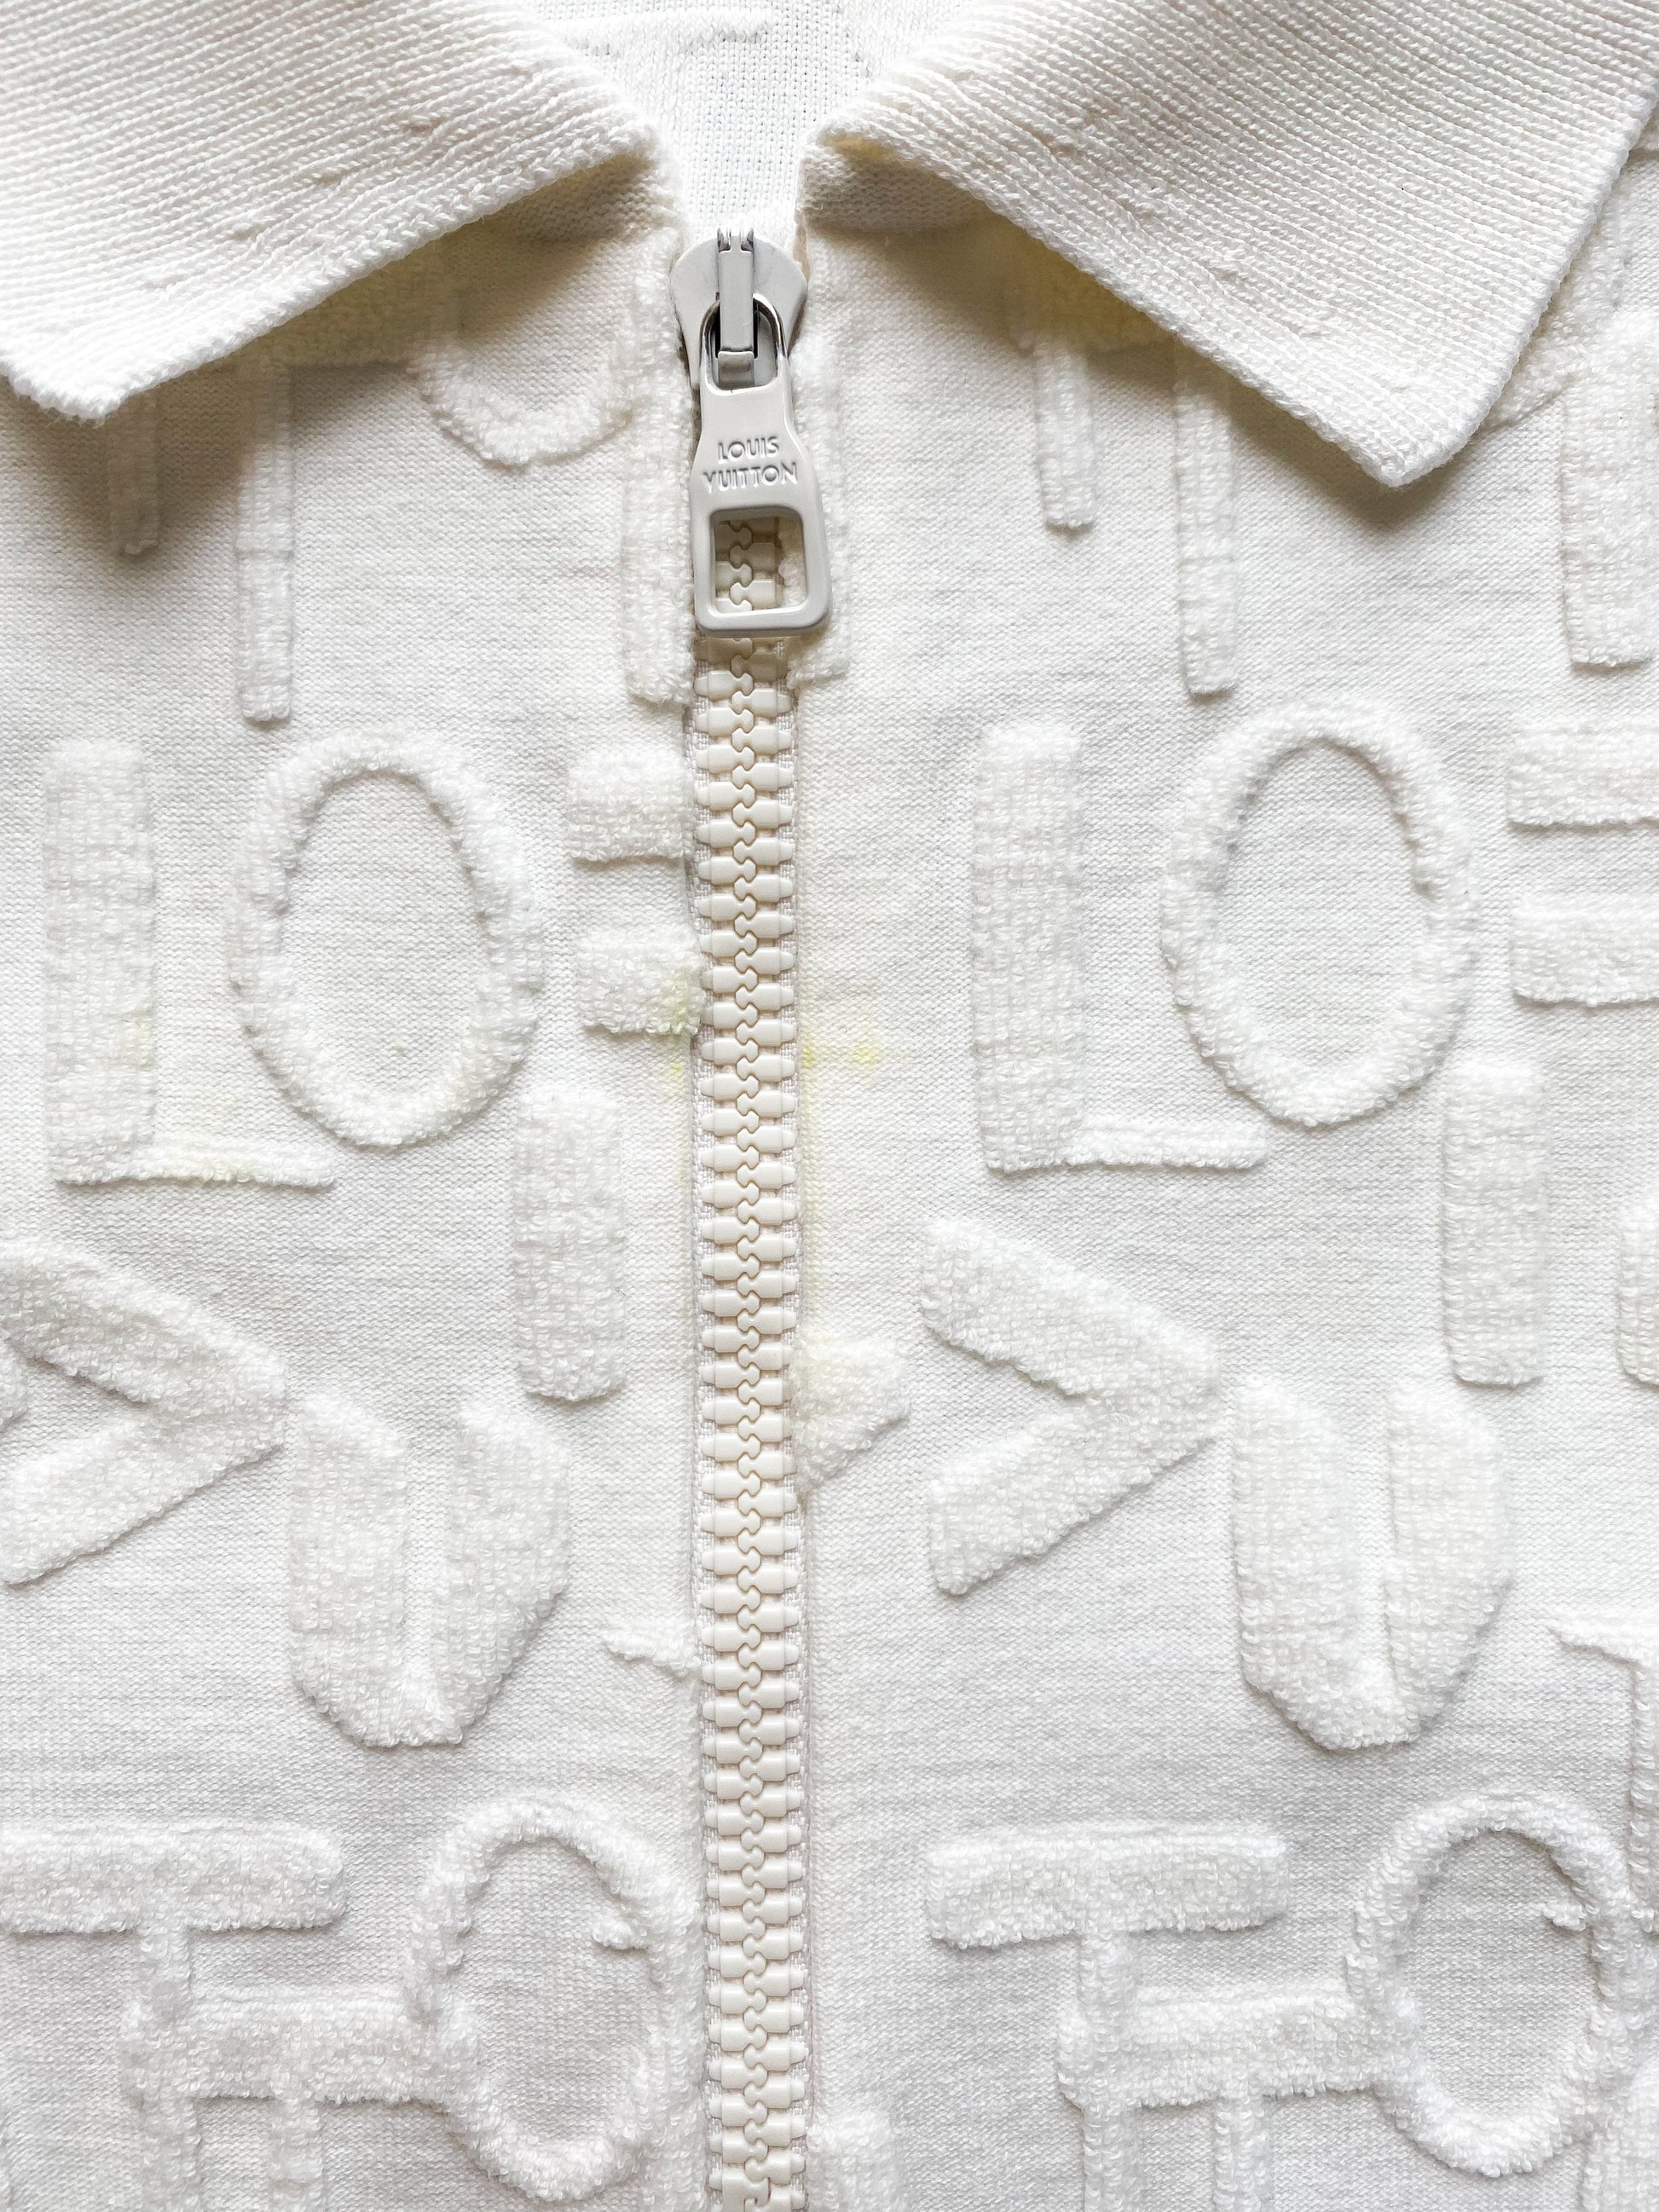 Louis Vuitton Python-effect Monogram Polo Top , White, Xs